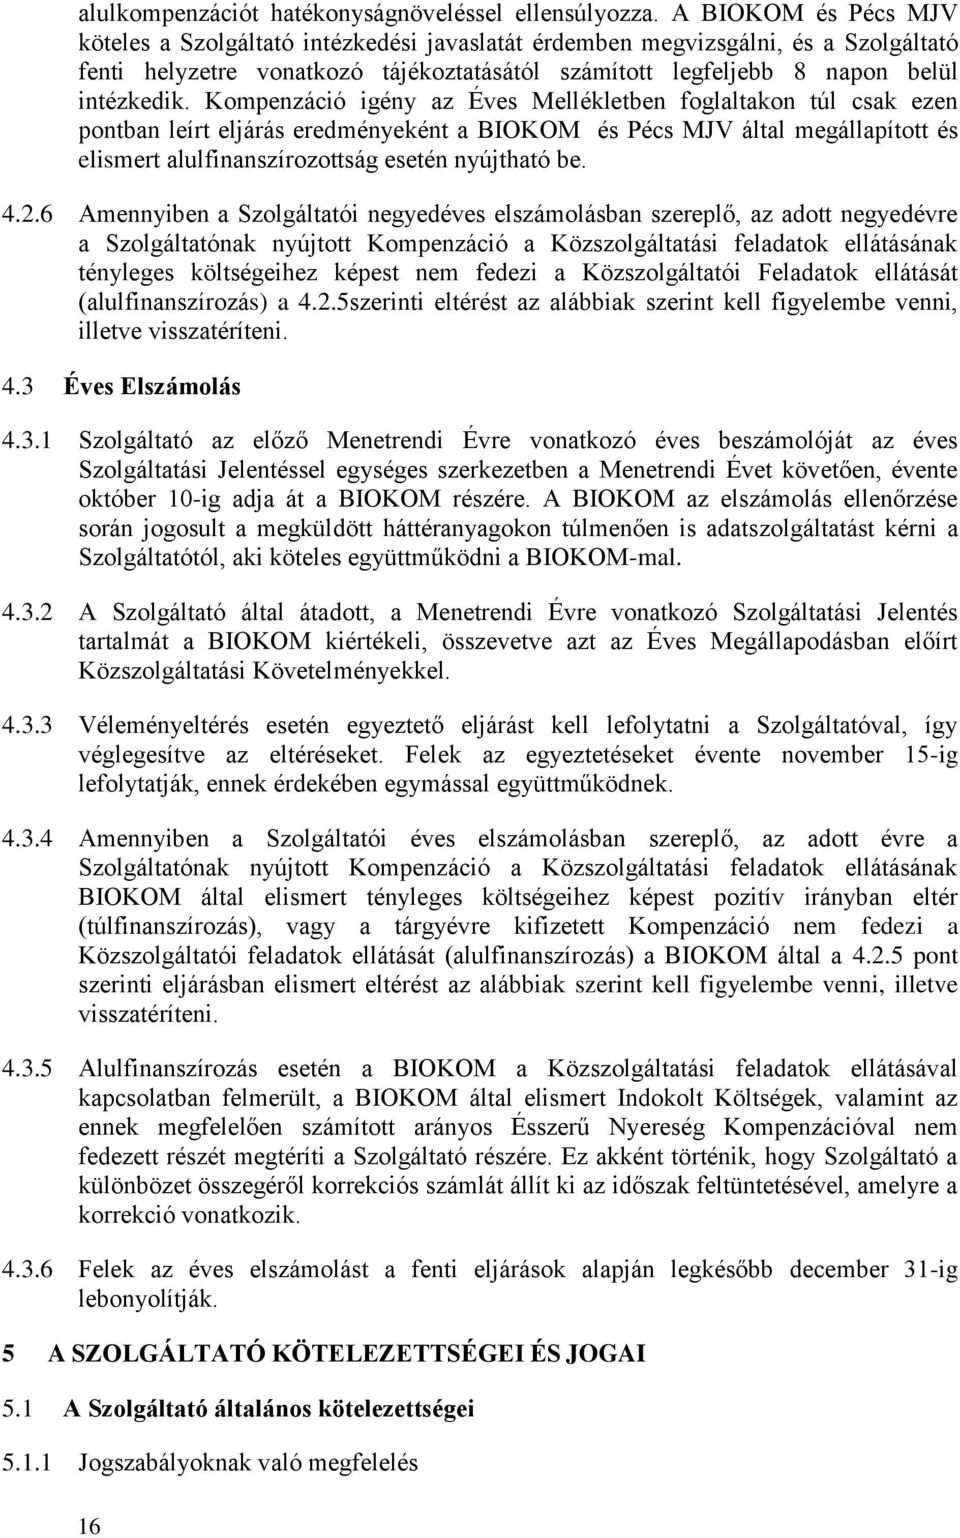 Kompenzáció igény az Éves Mellékletben foglaltakon túl csak ezen pontban leírt eljárás eredményeként a BIOKOM és Pécs MJV által megállapított és elismert alulfinanszírozottság esetén nyújtható be. 4.